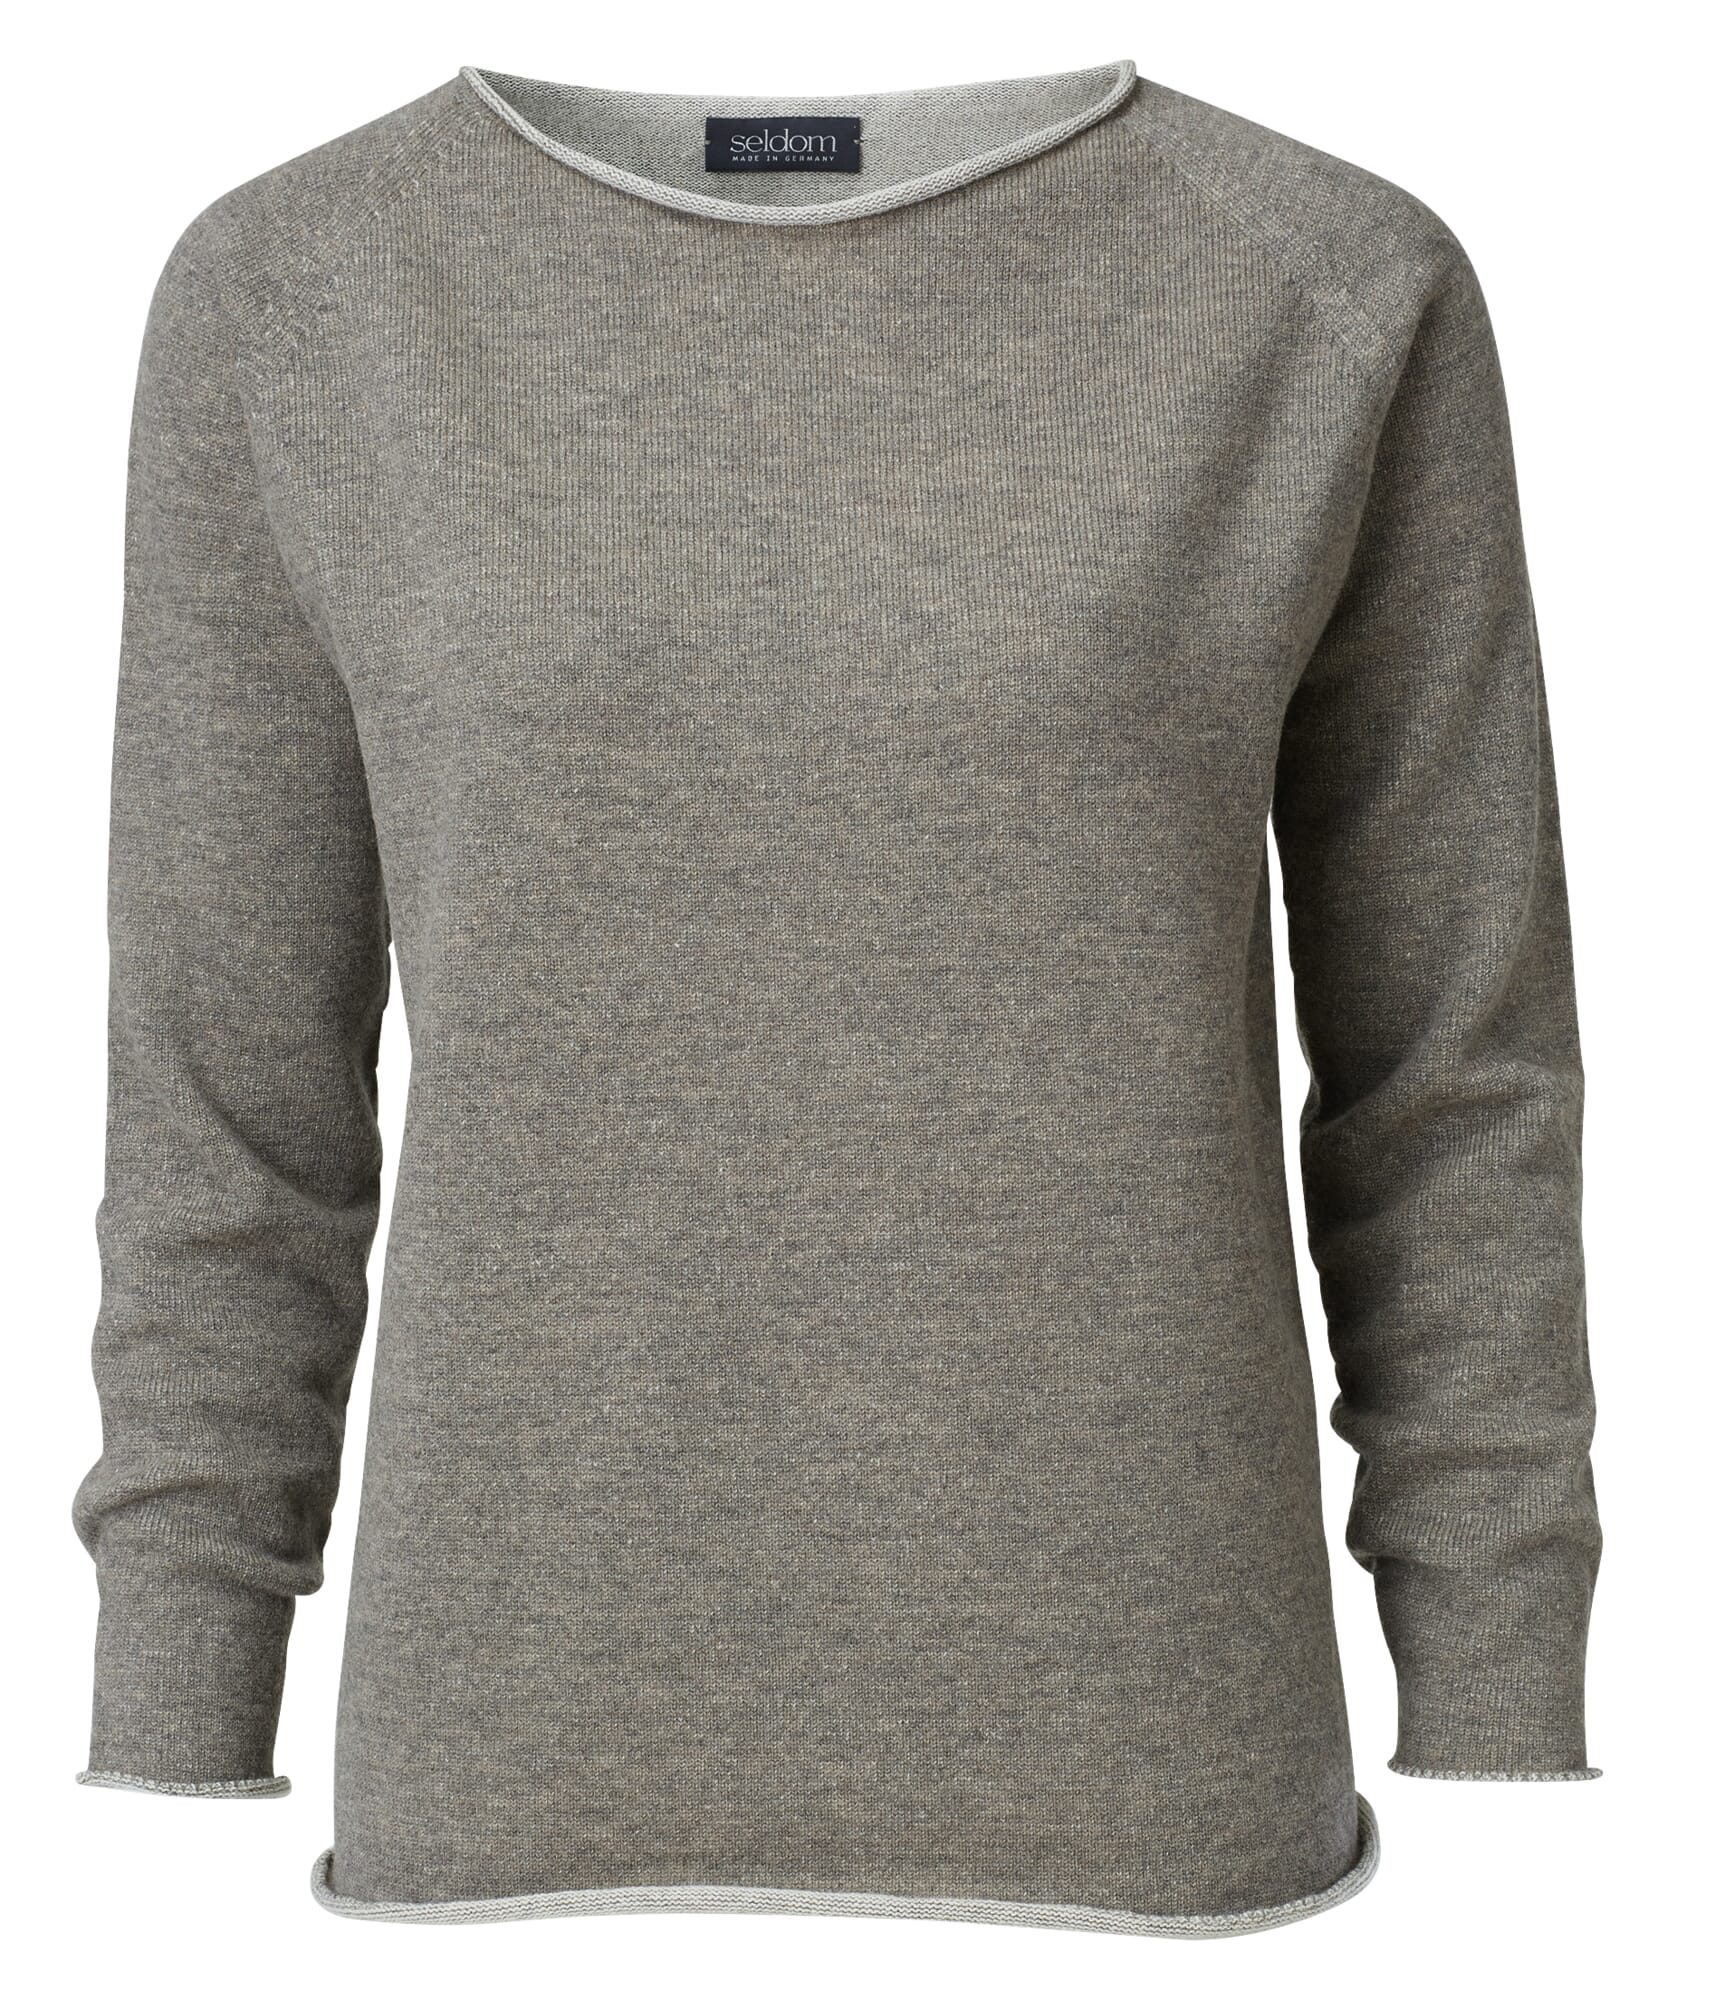 Ladies sweater merino wool, Beige-Brown